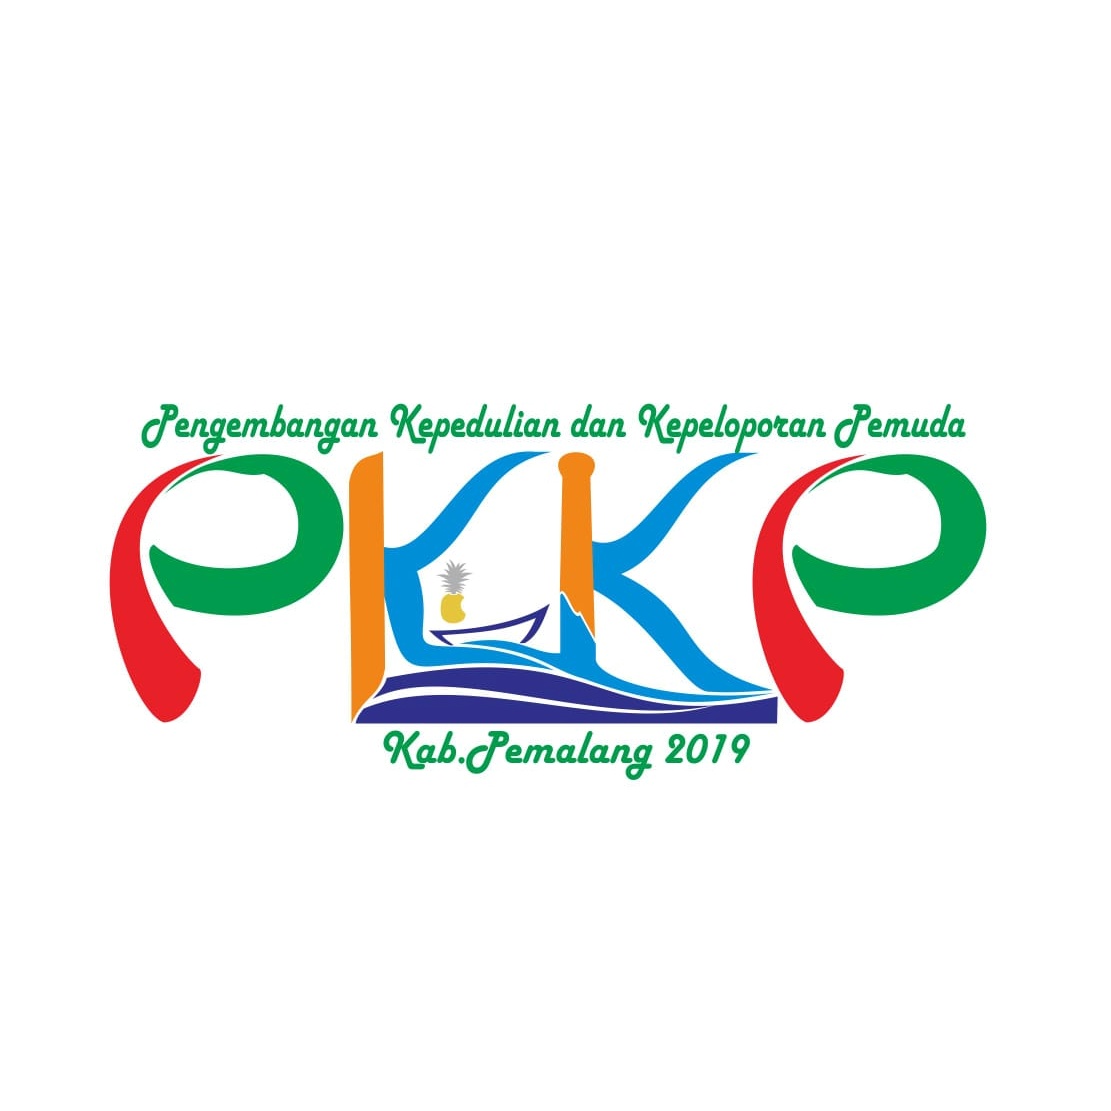 PKKP PEMALANG 2019